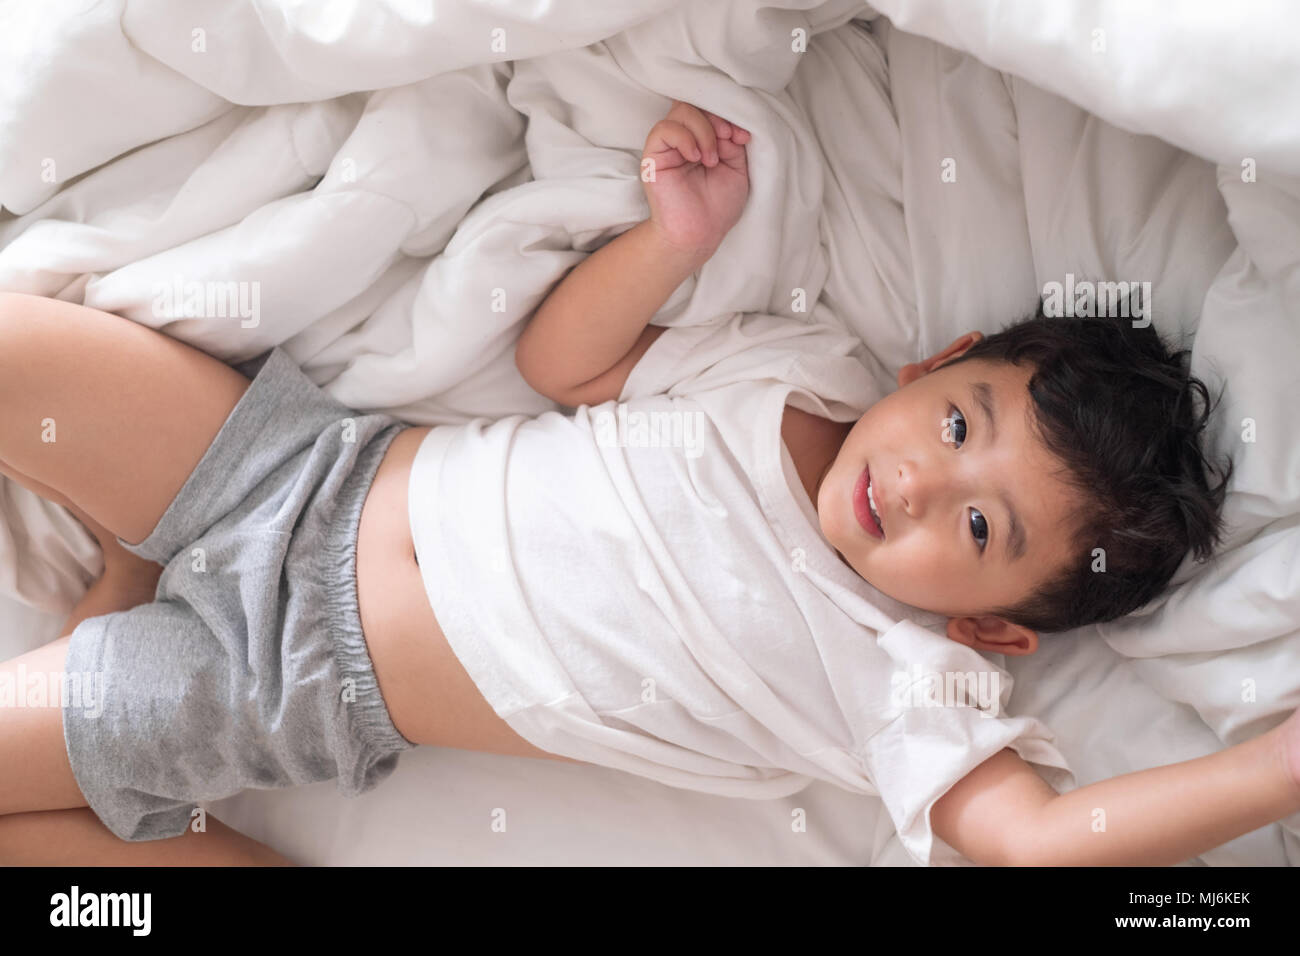 Спящему мальчику сняли трусы. Кровать для детей. Азиатский мальчик на кровати. Кровать для мальчика.